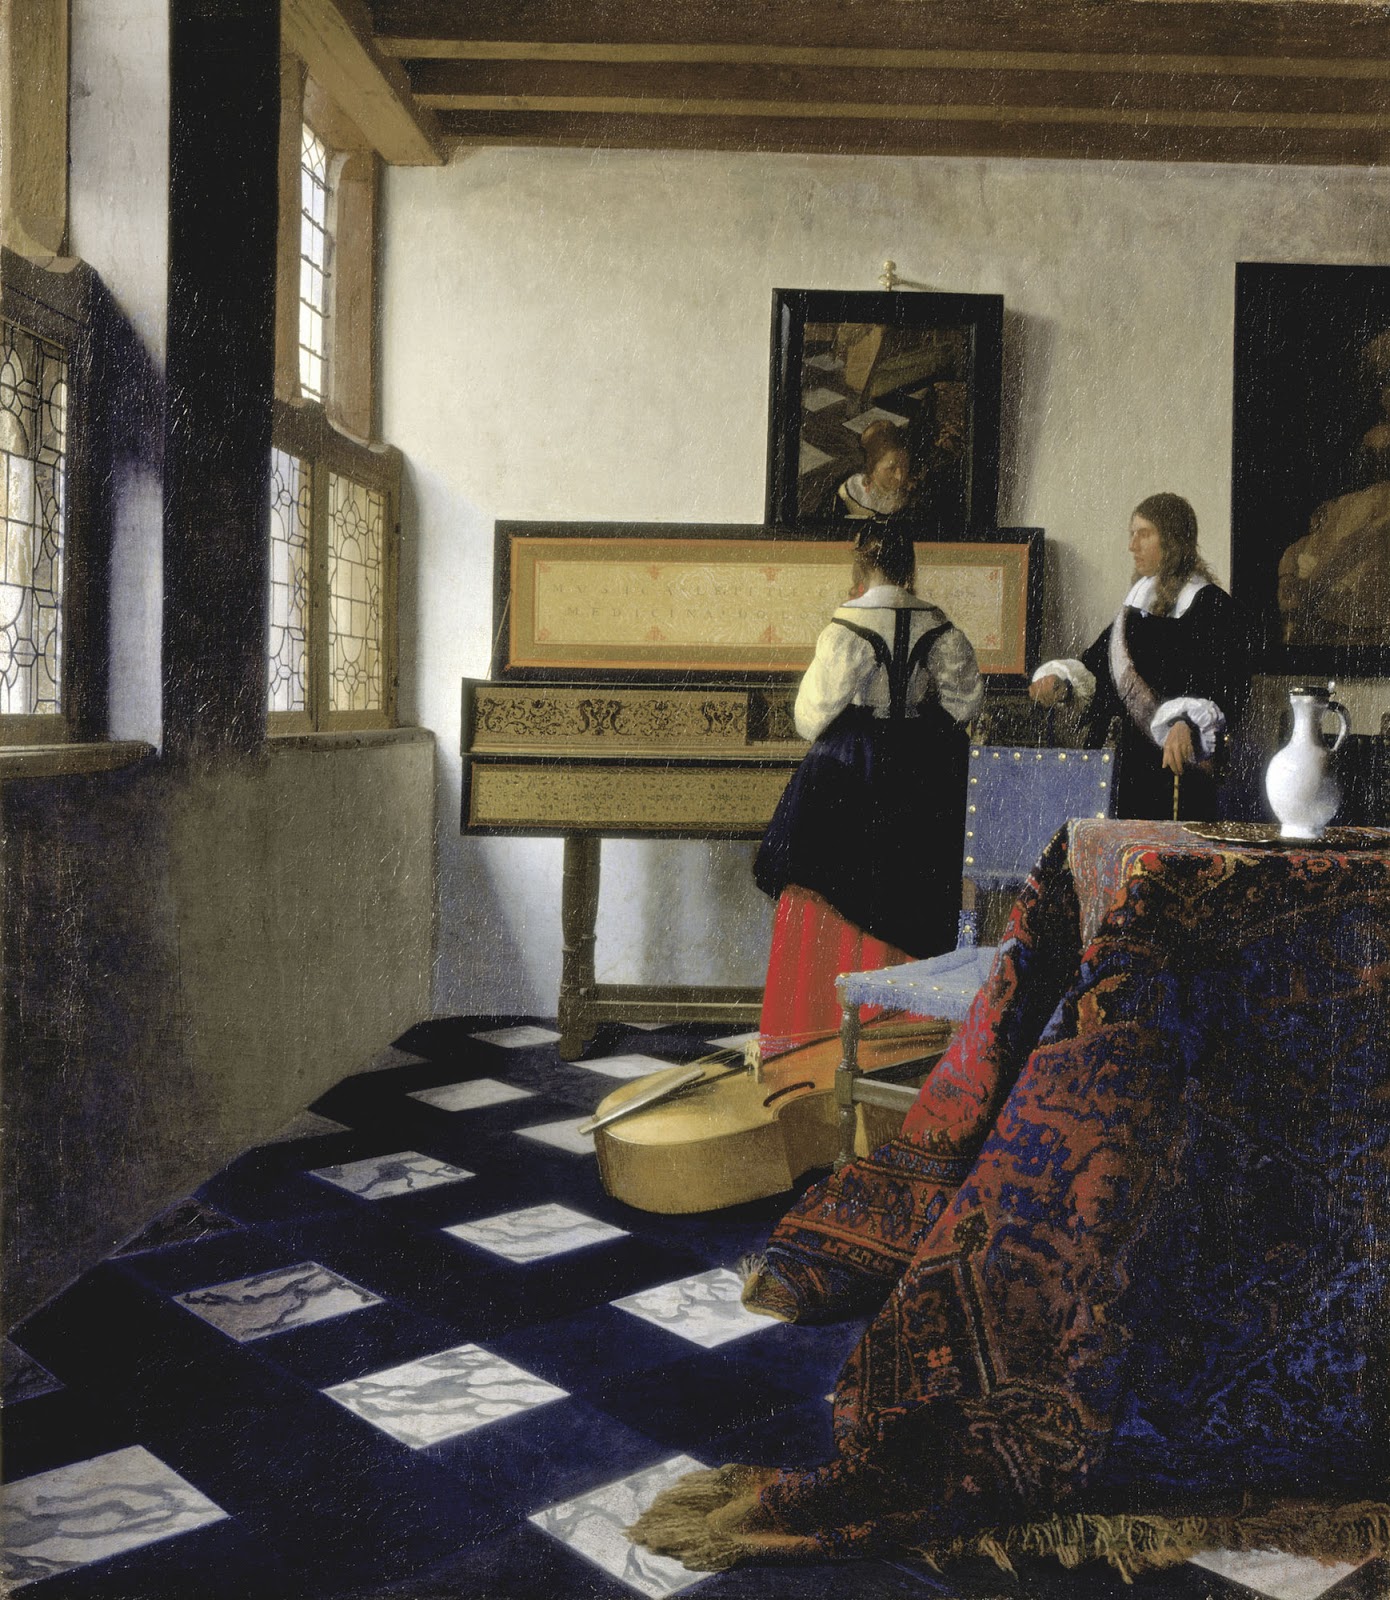 Johannes+Vermeer-1632-1675 (59).jpg